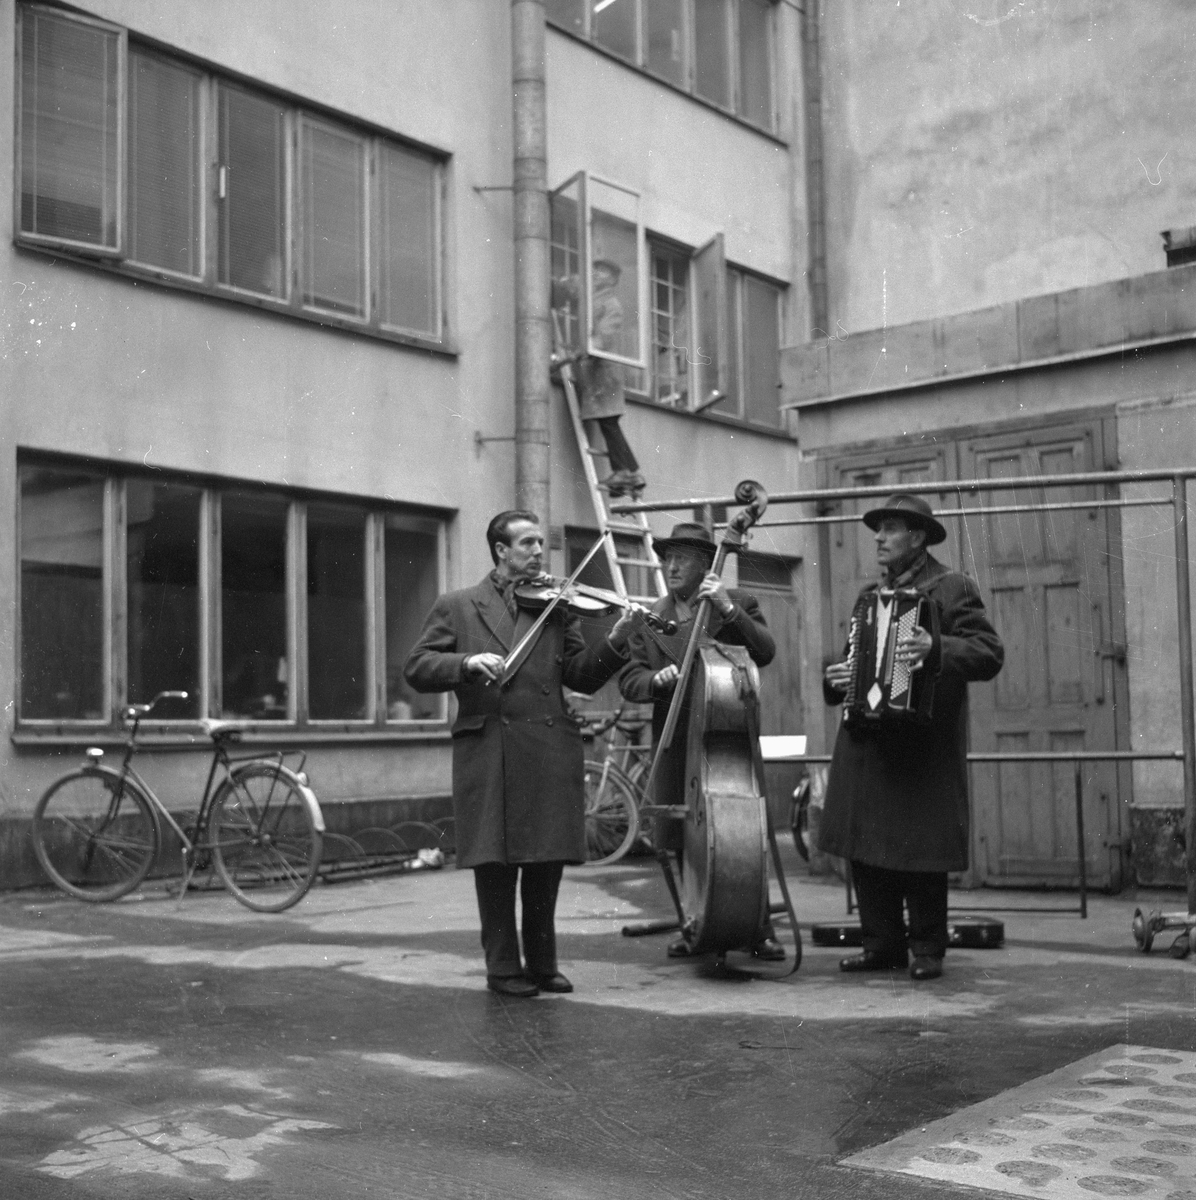 Gårdsmusikanter.
10 april 1959. 
Musikanterna är från Stockholm och spelar på en bakgård i Örebro. Rune Lövkvist fiol, Nils Olsson kontrabas och Tore Olsson dragspel.